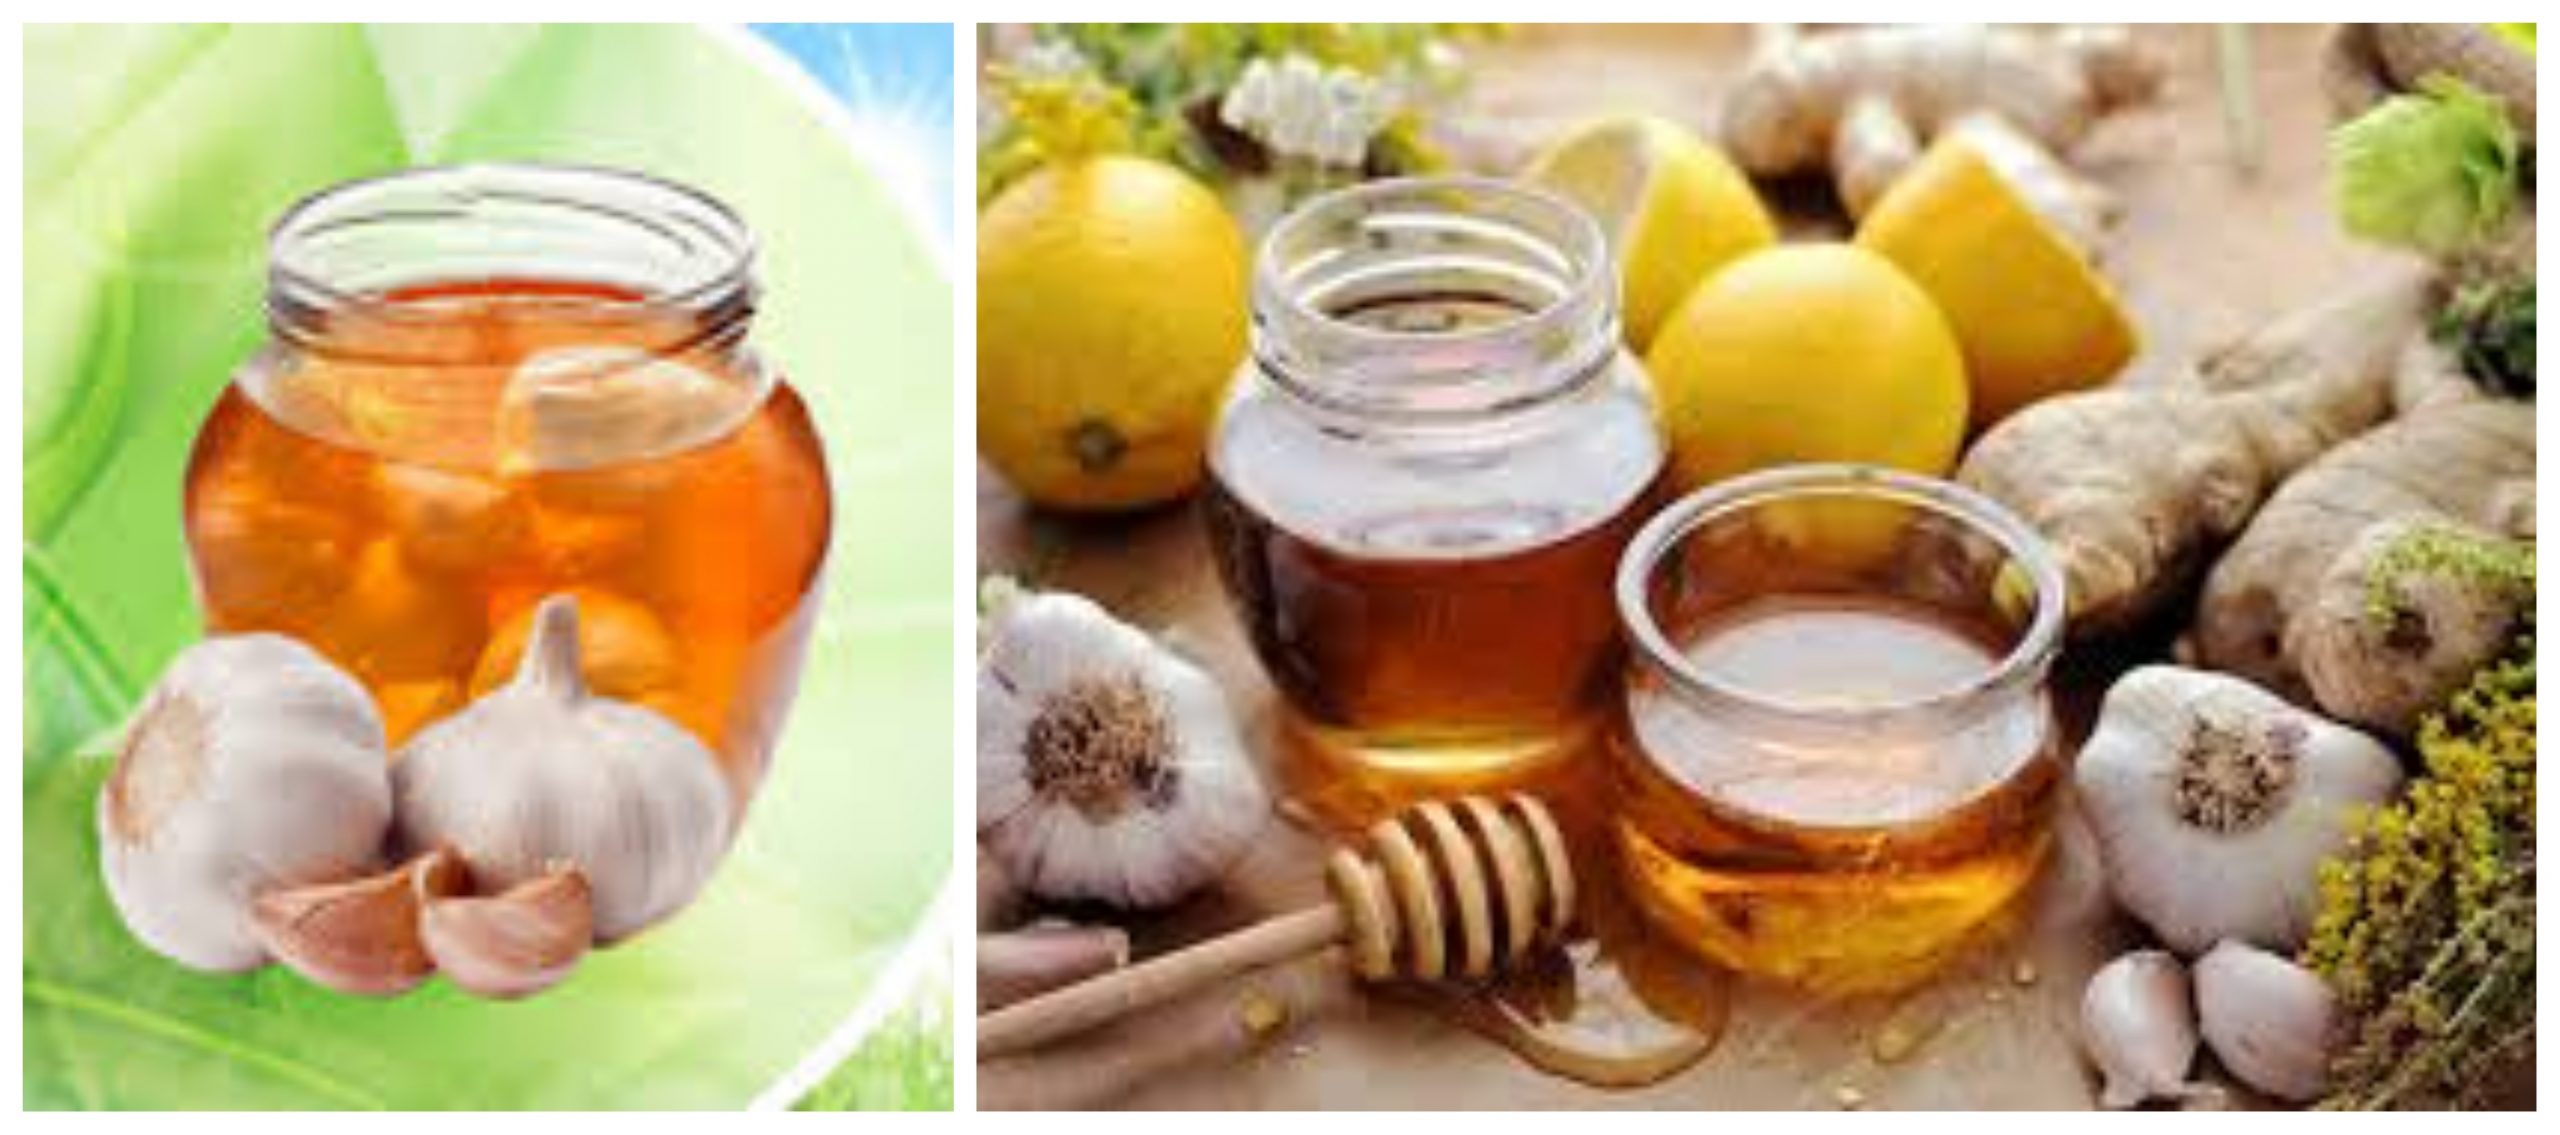 وصفة العسل بالثوم المخمر